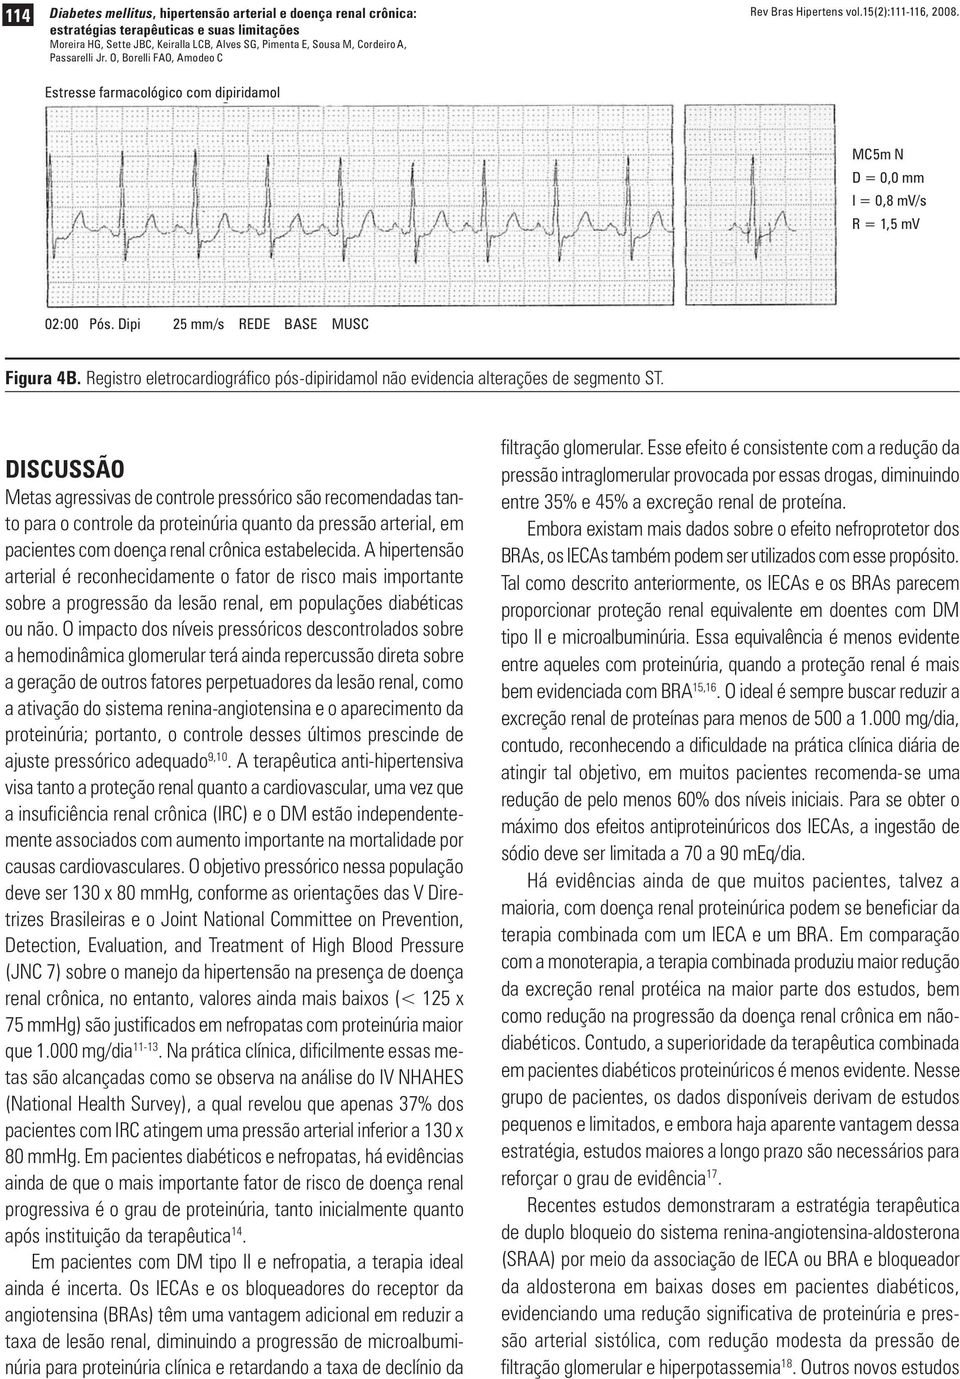 Registro eletrocardiográfico pós-dipiridamol não evidencia alterações de segmento ST.